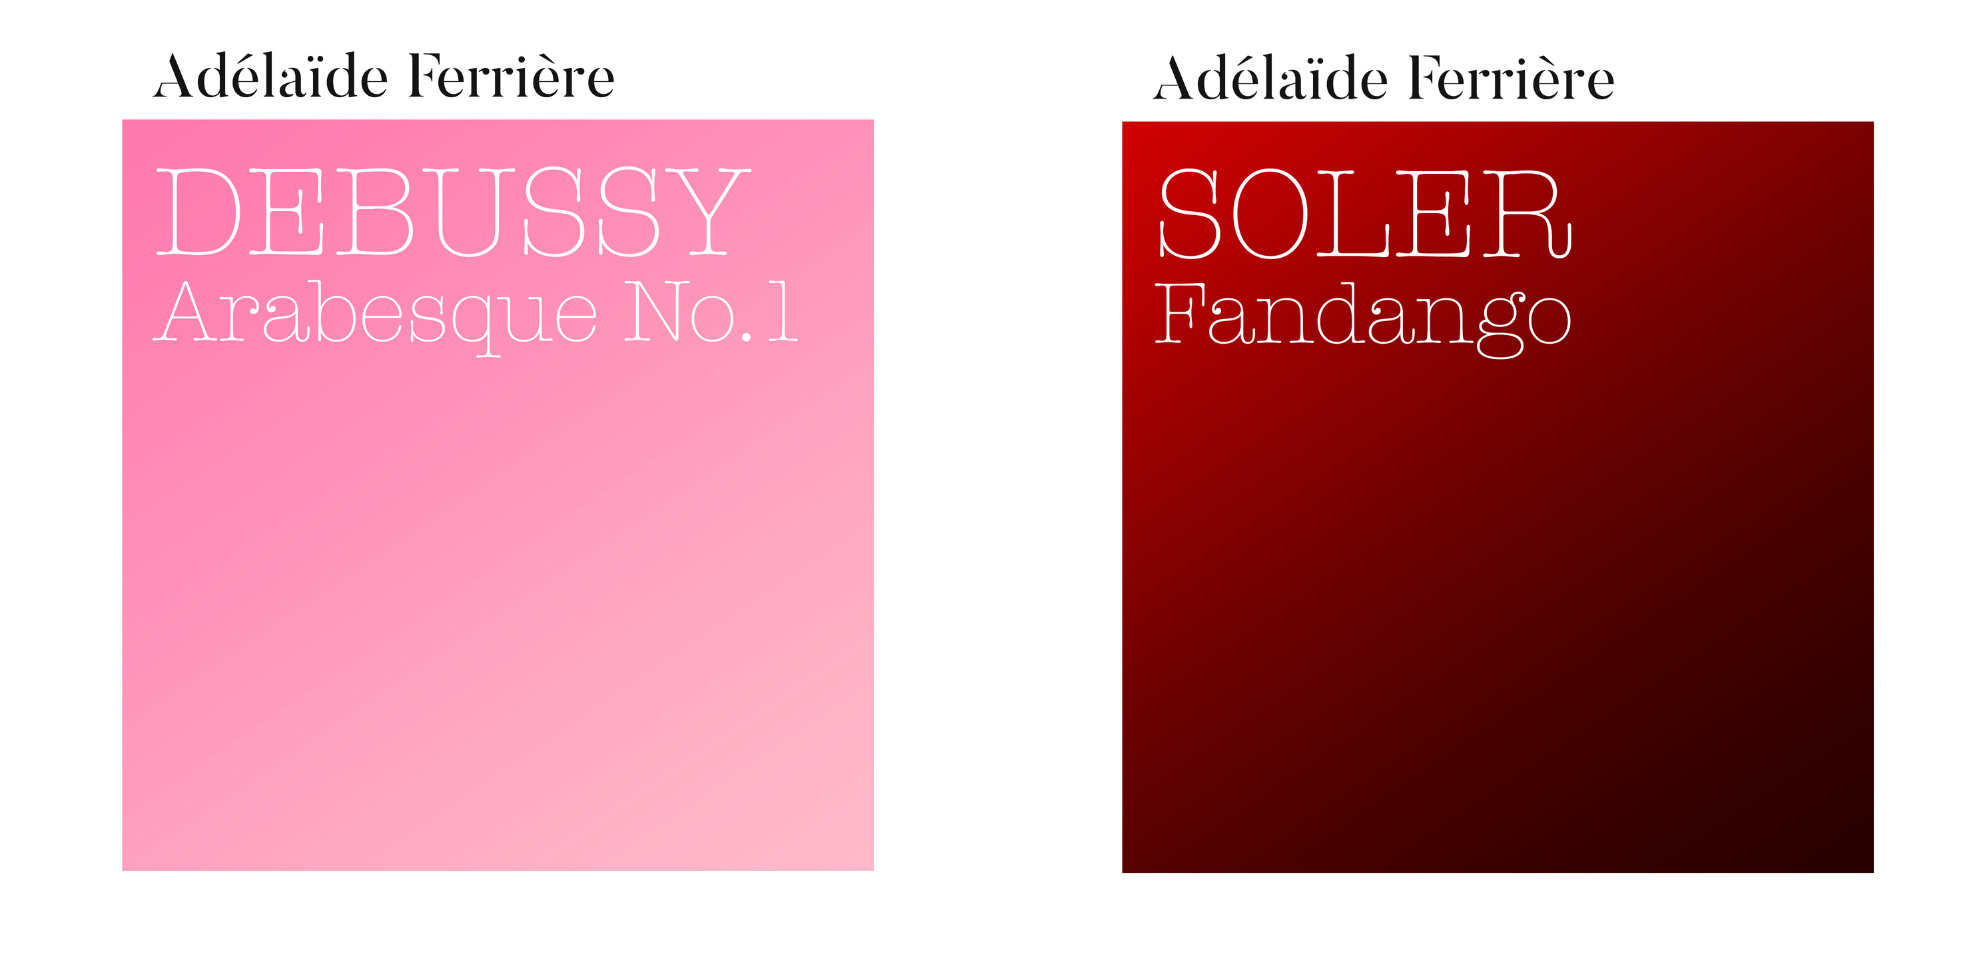 Adélaîde Ferrière - DEBUSSY « Arabesque N°1 » & SOLER « Fandango » 